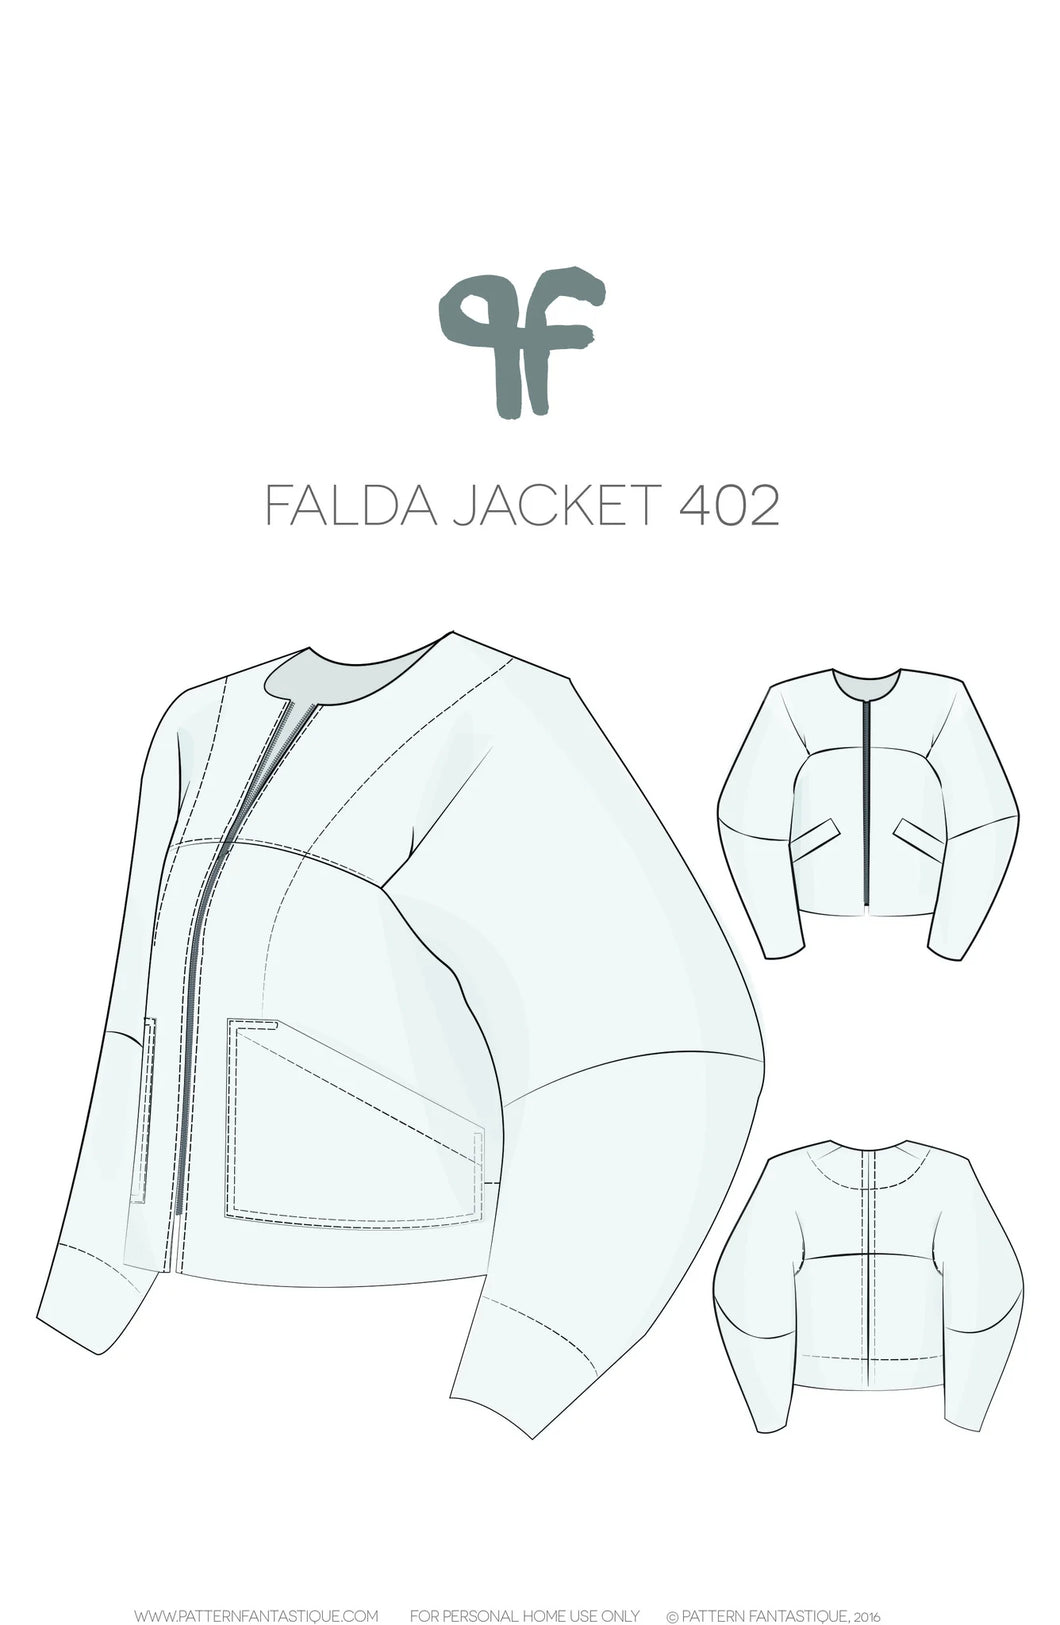 Pattern Fantastique Falda Jacket